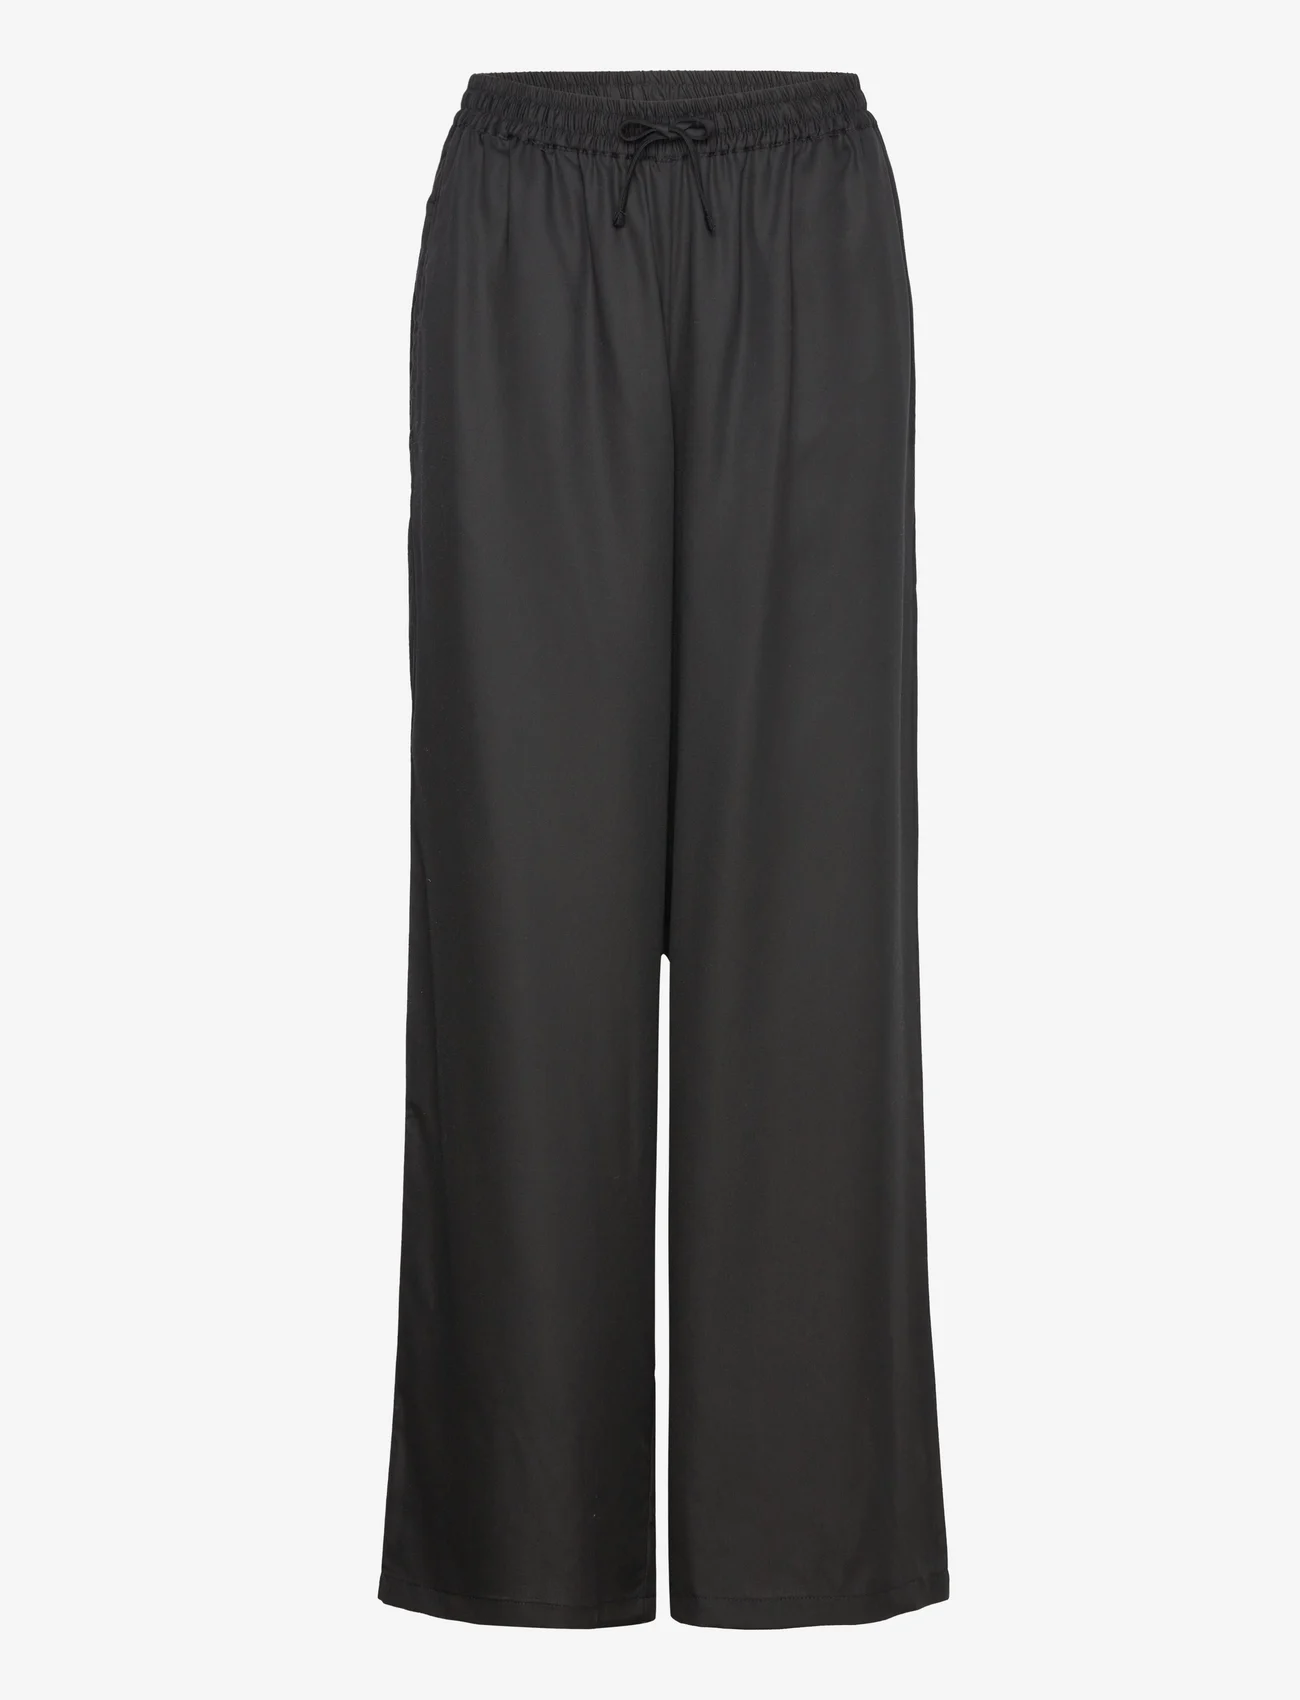 Makia - Ley Trousers - bukser med brede ben - black - 0